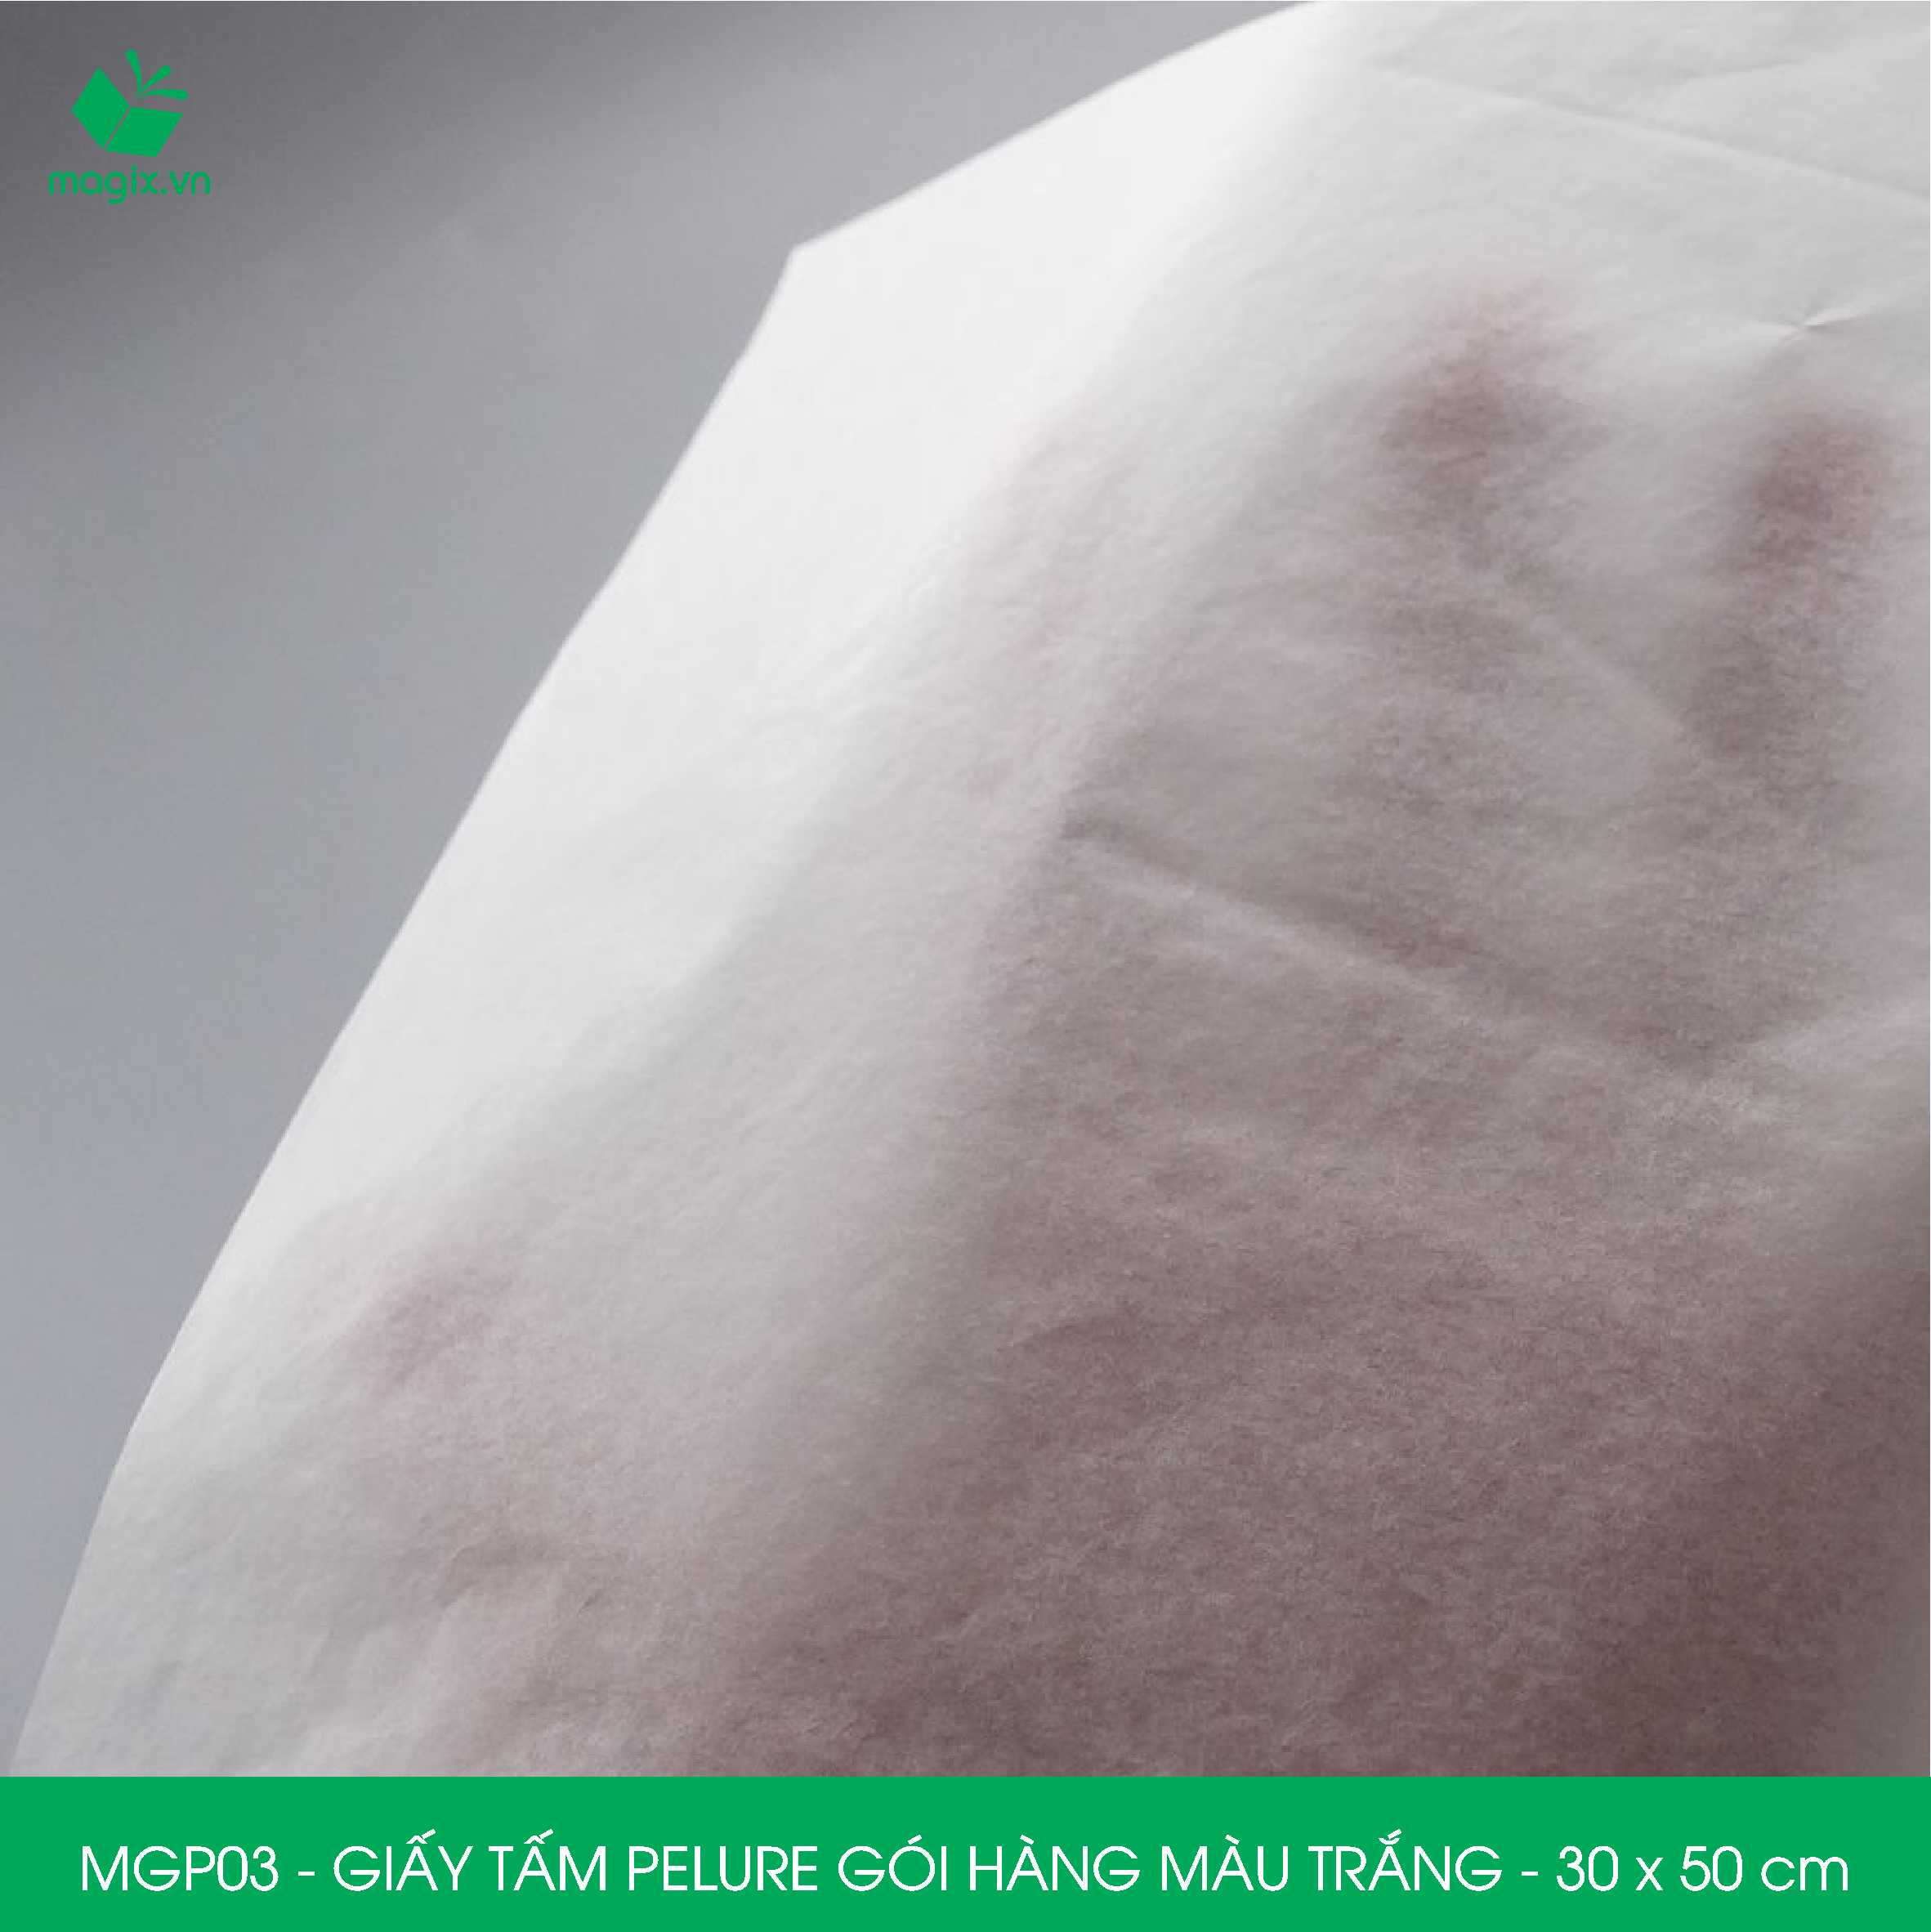 MGP03 - 30x50 cm - 500 tấm giấy Pelure trắng gói hàng, giấy chống ẩm 2 mặt mịn, giấy bọc hàng thời trang